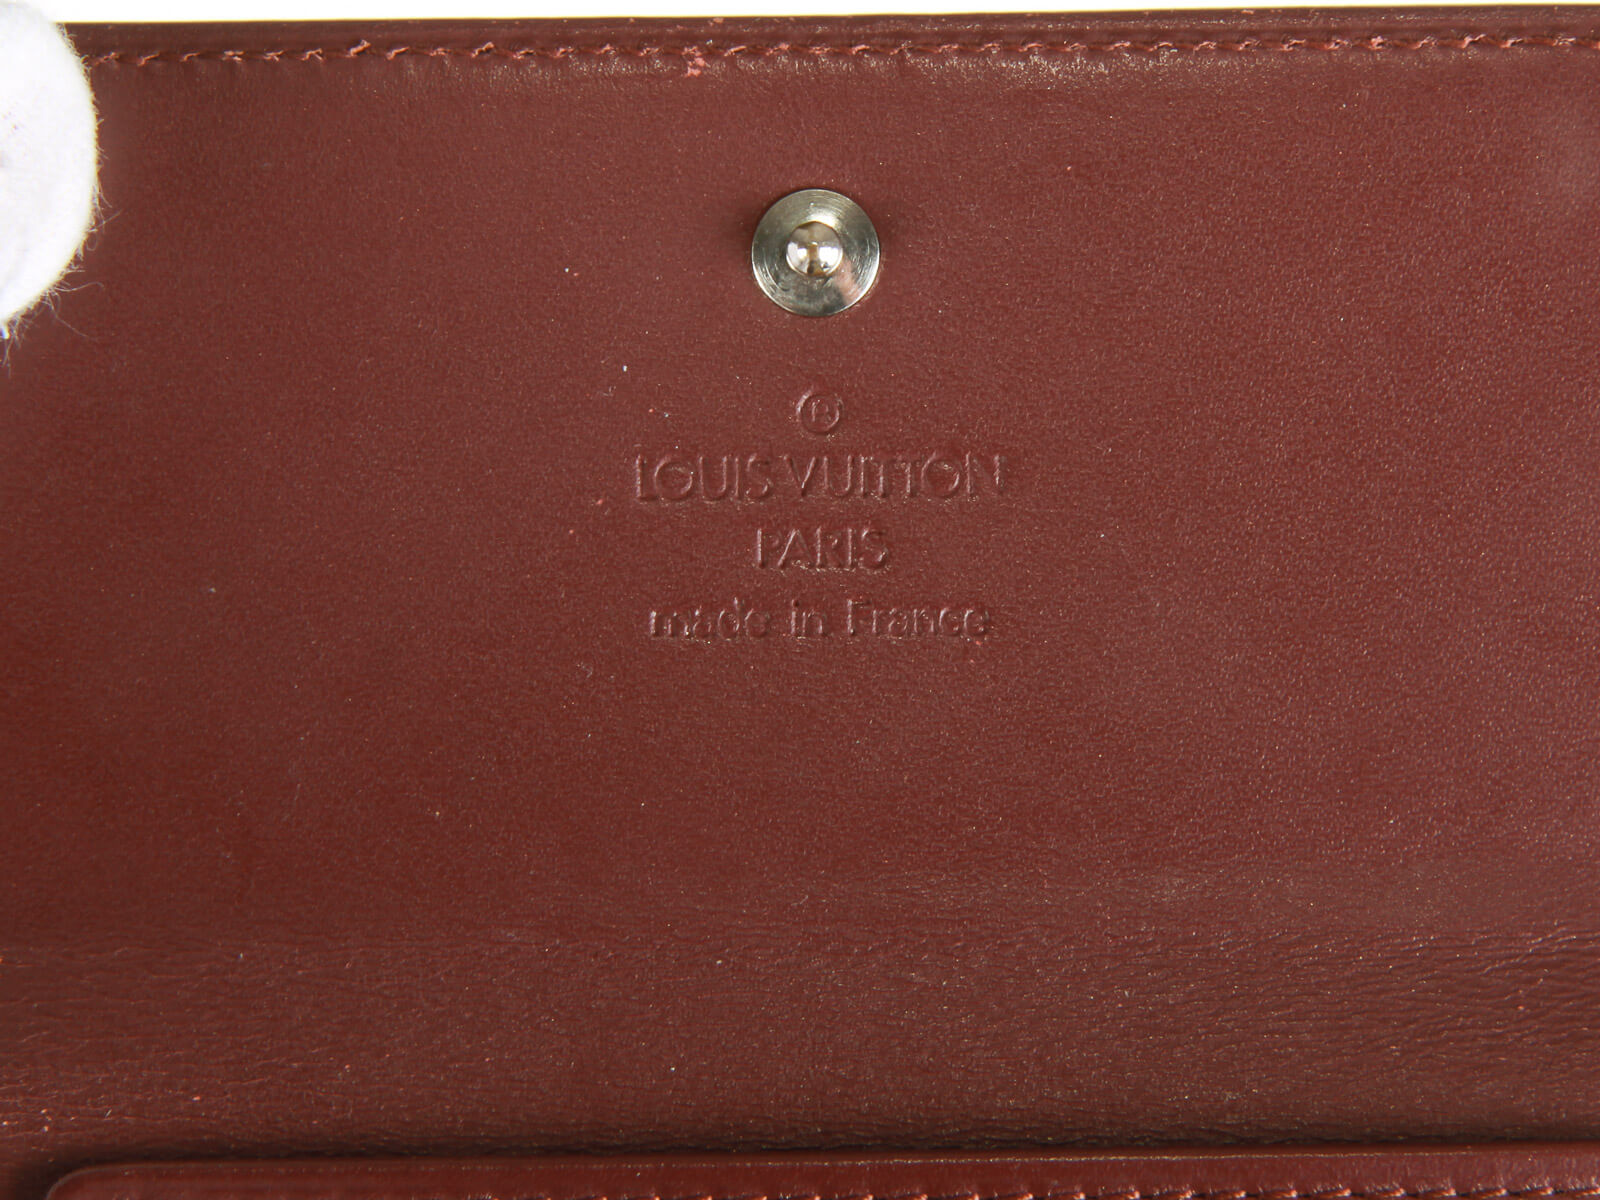 VTG Louis Vuitton 1998 Porte-Billets Carte Bleue Brown Leather Wallet